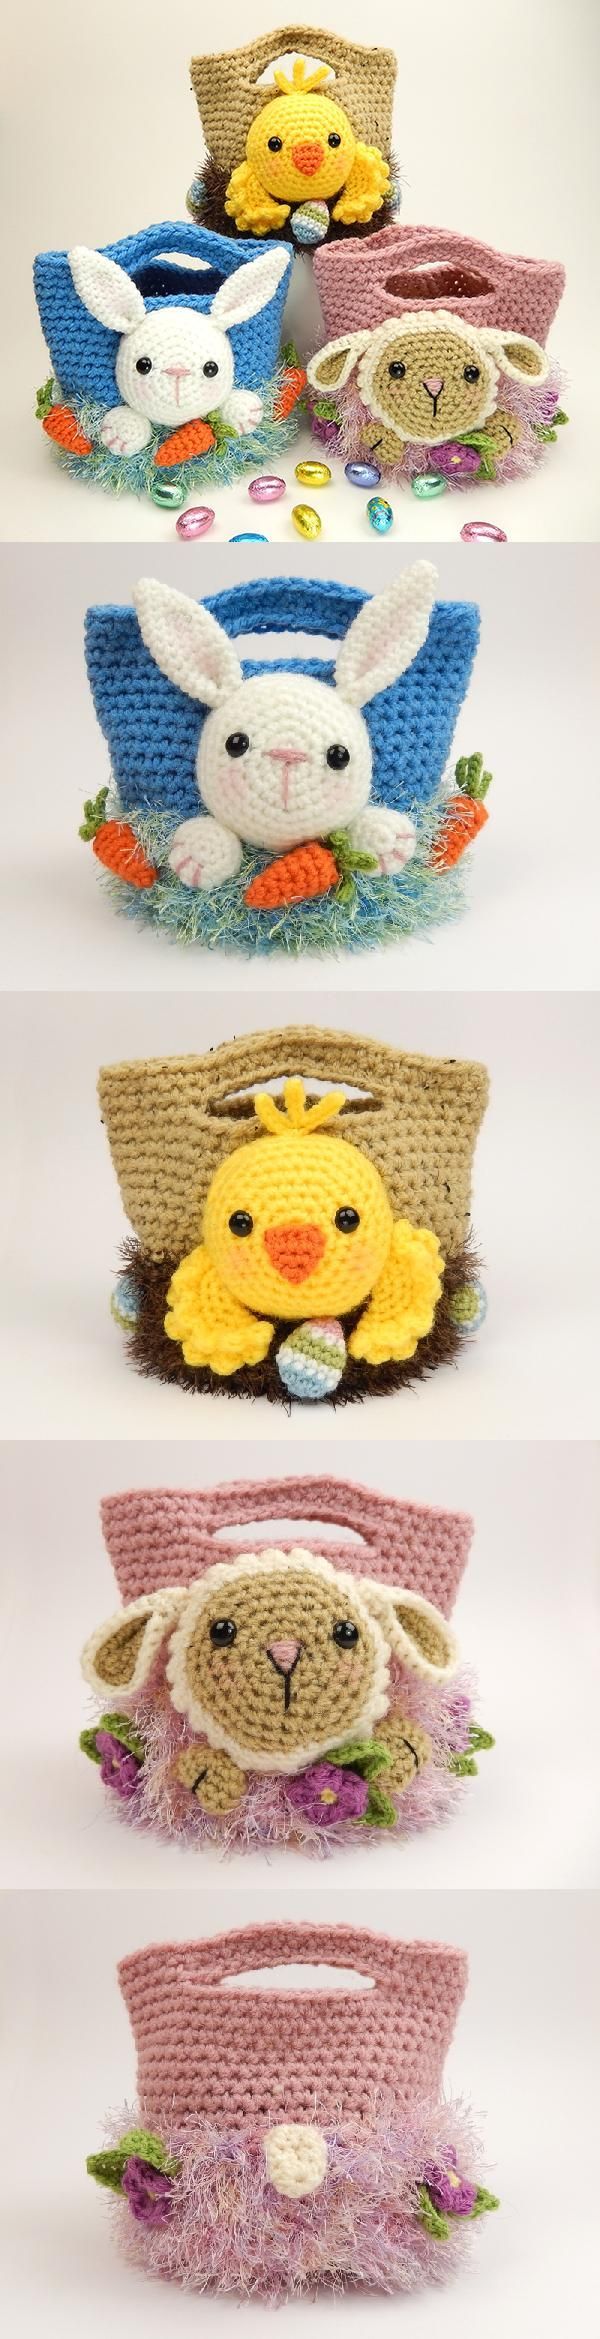 Easter Treat Bags Crochet Pattern